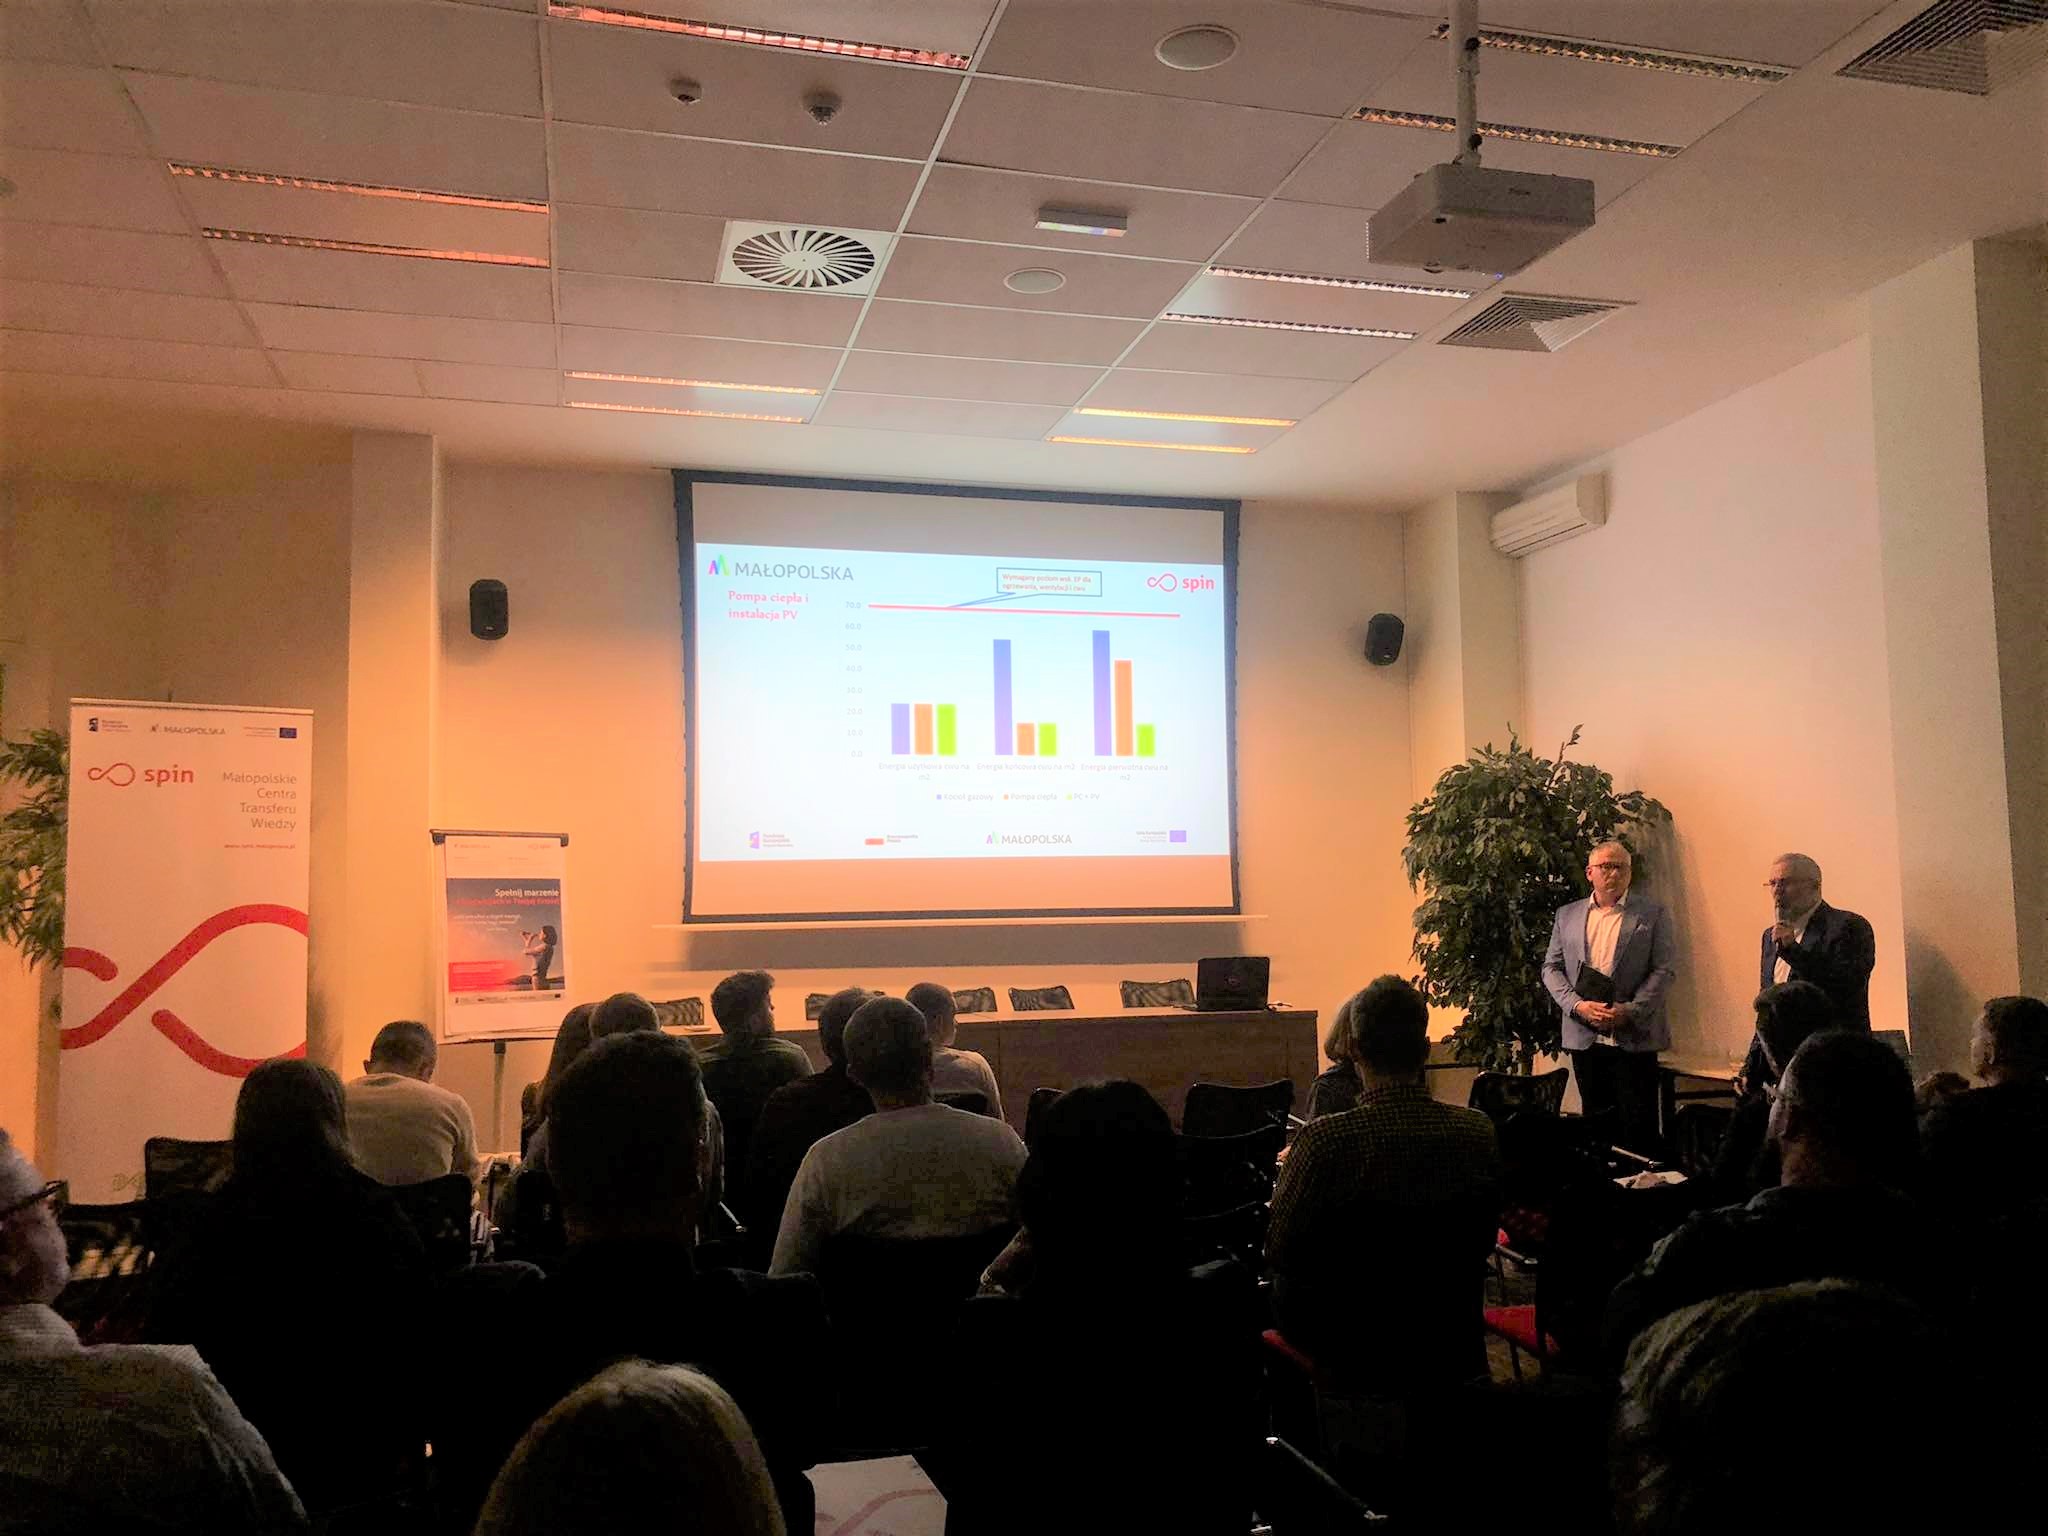 zdjęcie z konferencji SPIN CAMP. Publiczność,  na środku na ekranie dużego rzutnika wykresy, obok prelegent prowadzący konferencję